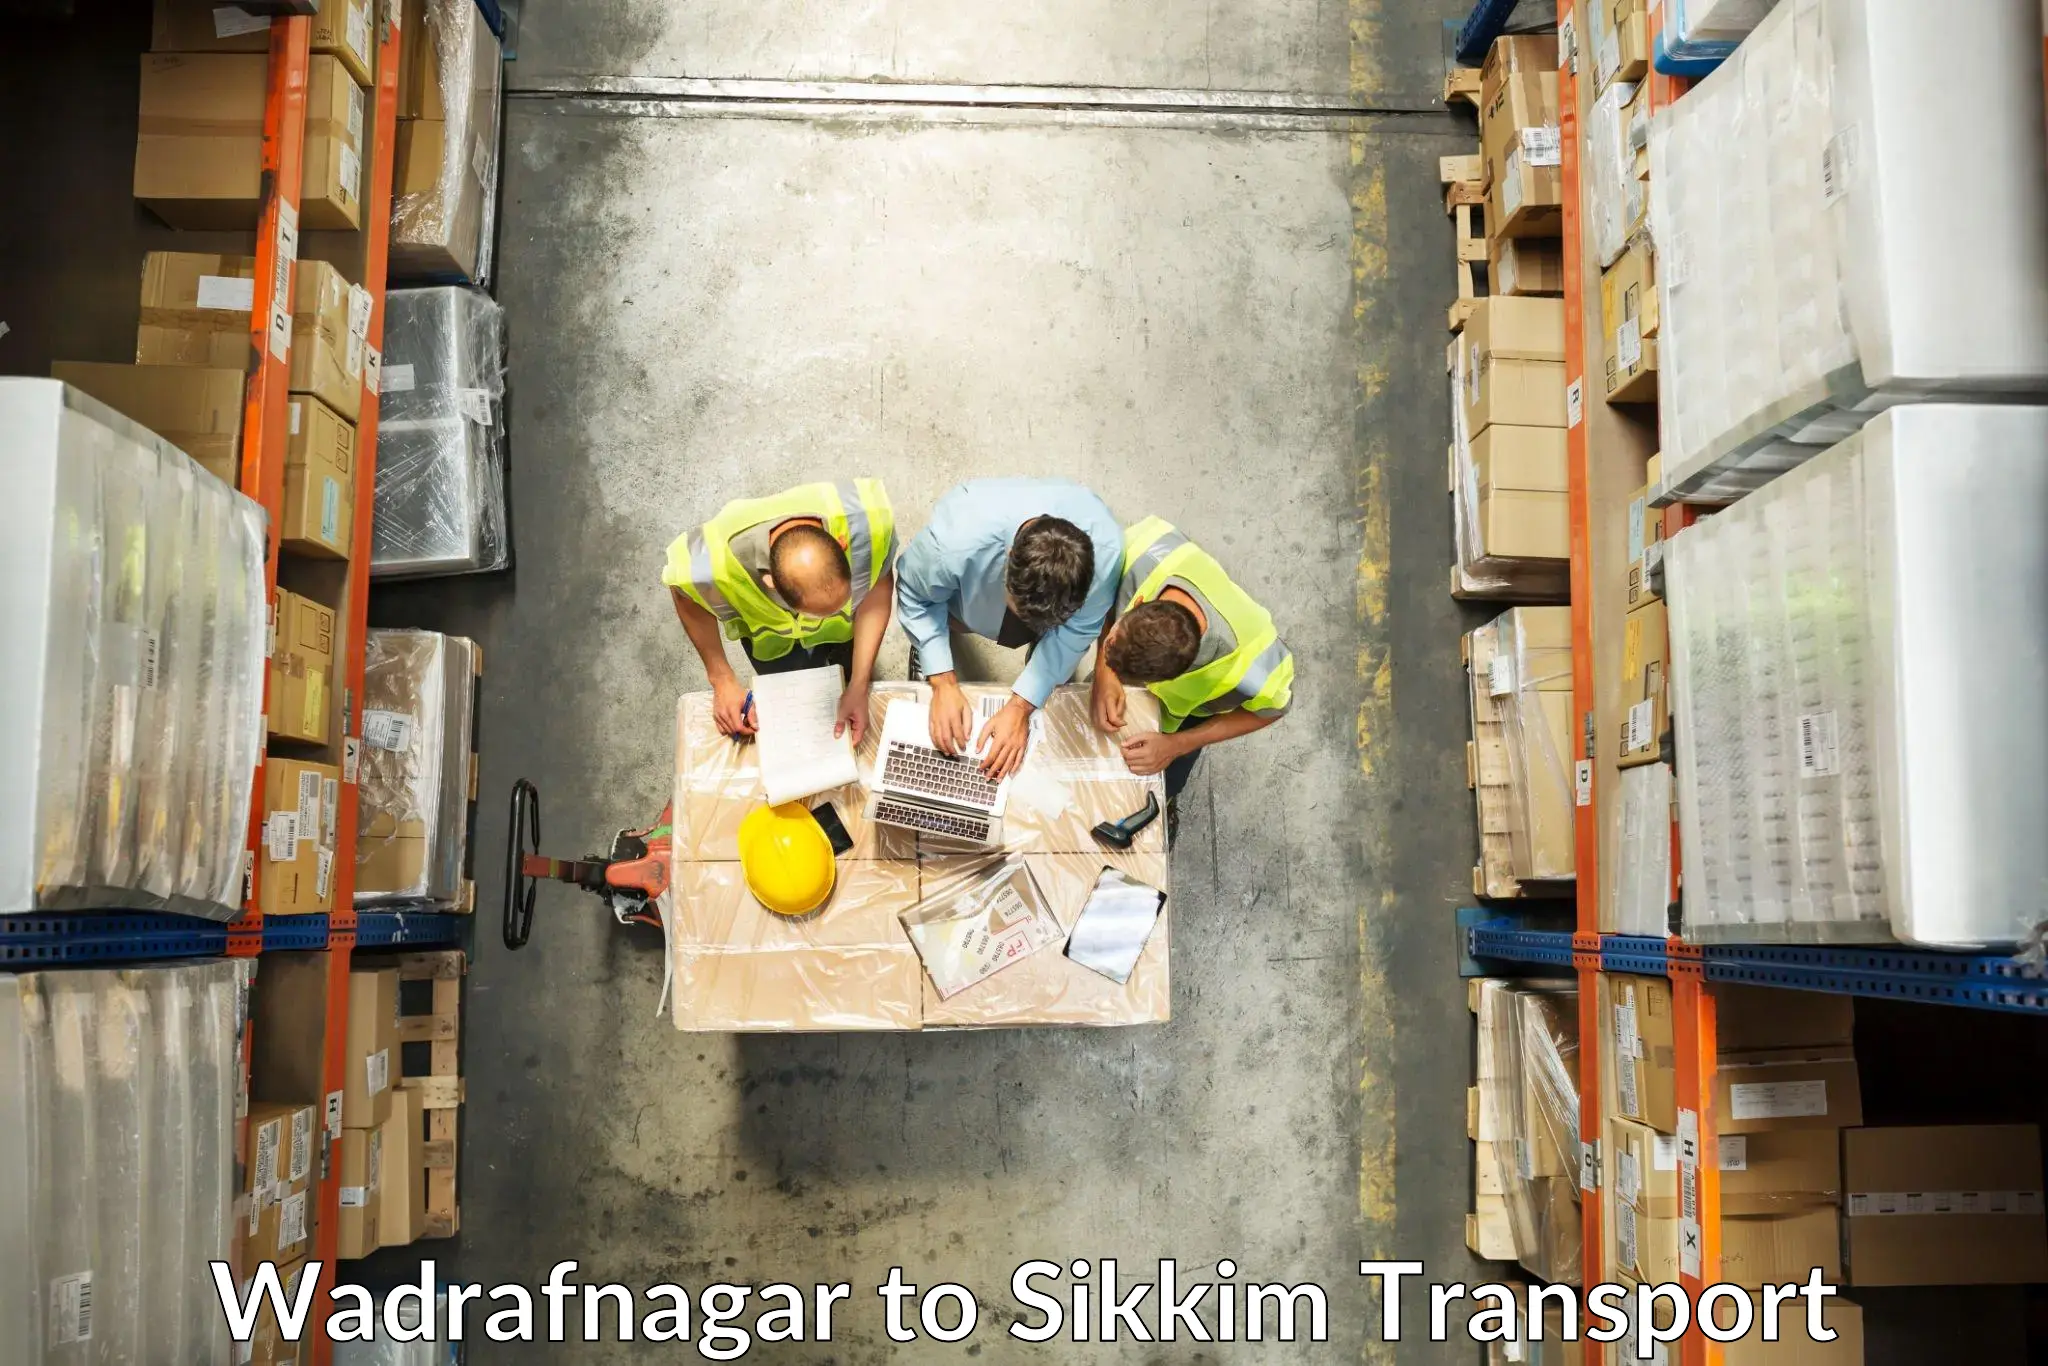 International cargo transportation services Wadrafnagar to Singtam